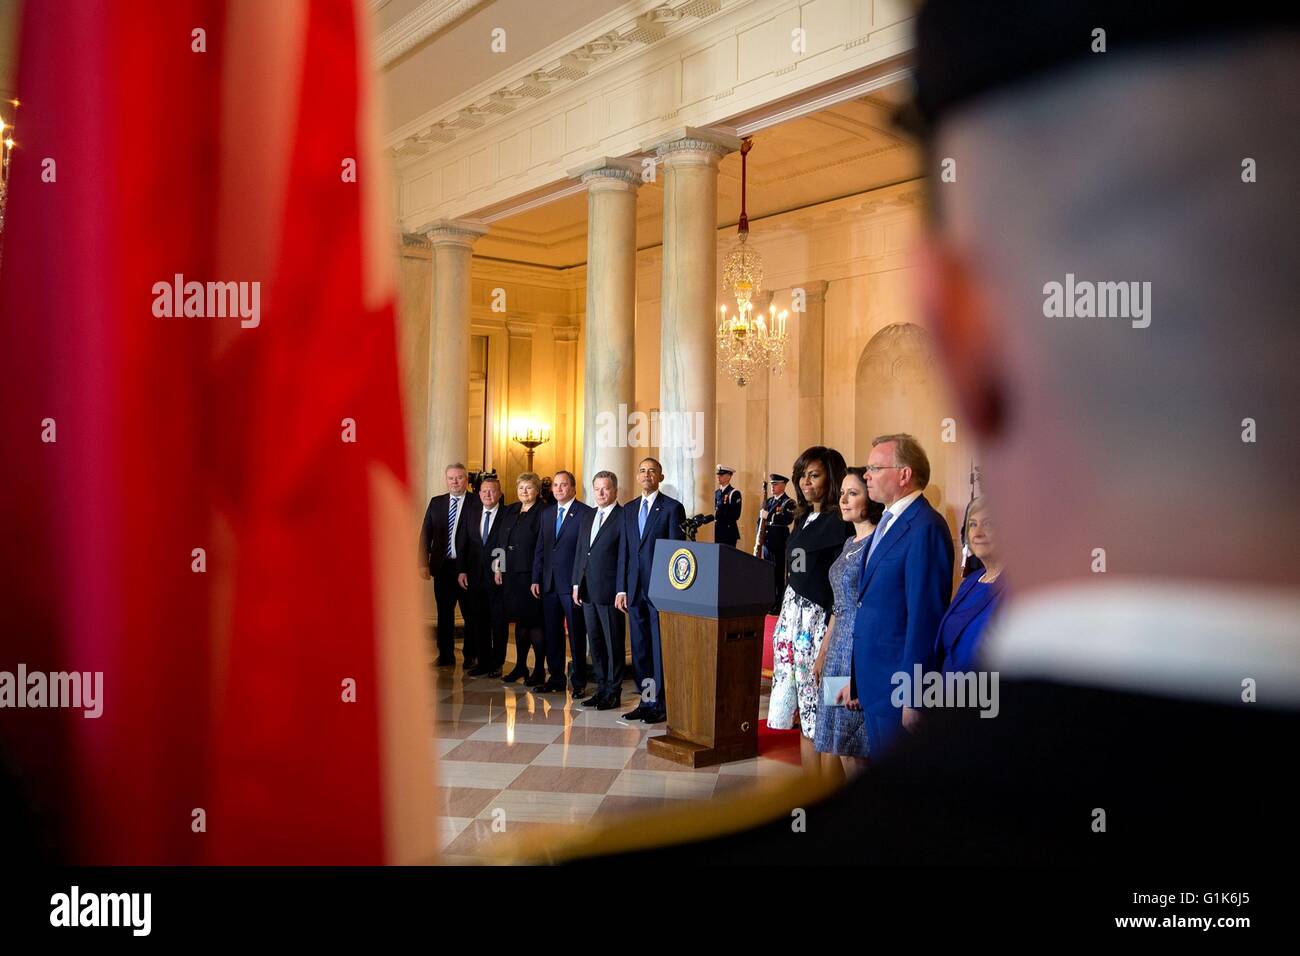 US-Präsident Barack Obama und die nordischen Führer sehen die Darstellung der Farben im Grand Foyer während der Ankunft Zeremonie im Weißen Haus 13. Mai 2016 in Washington, DC. Stockfoto